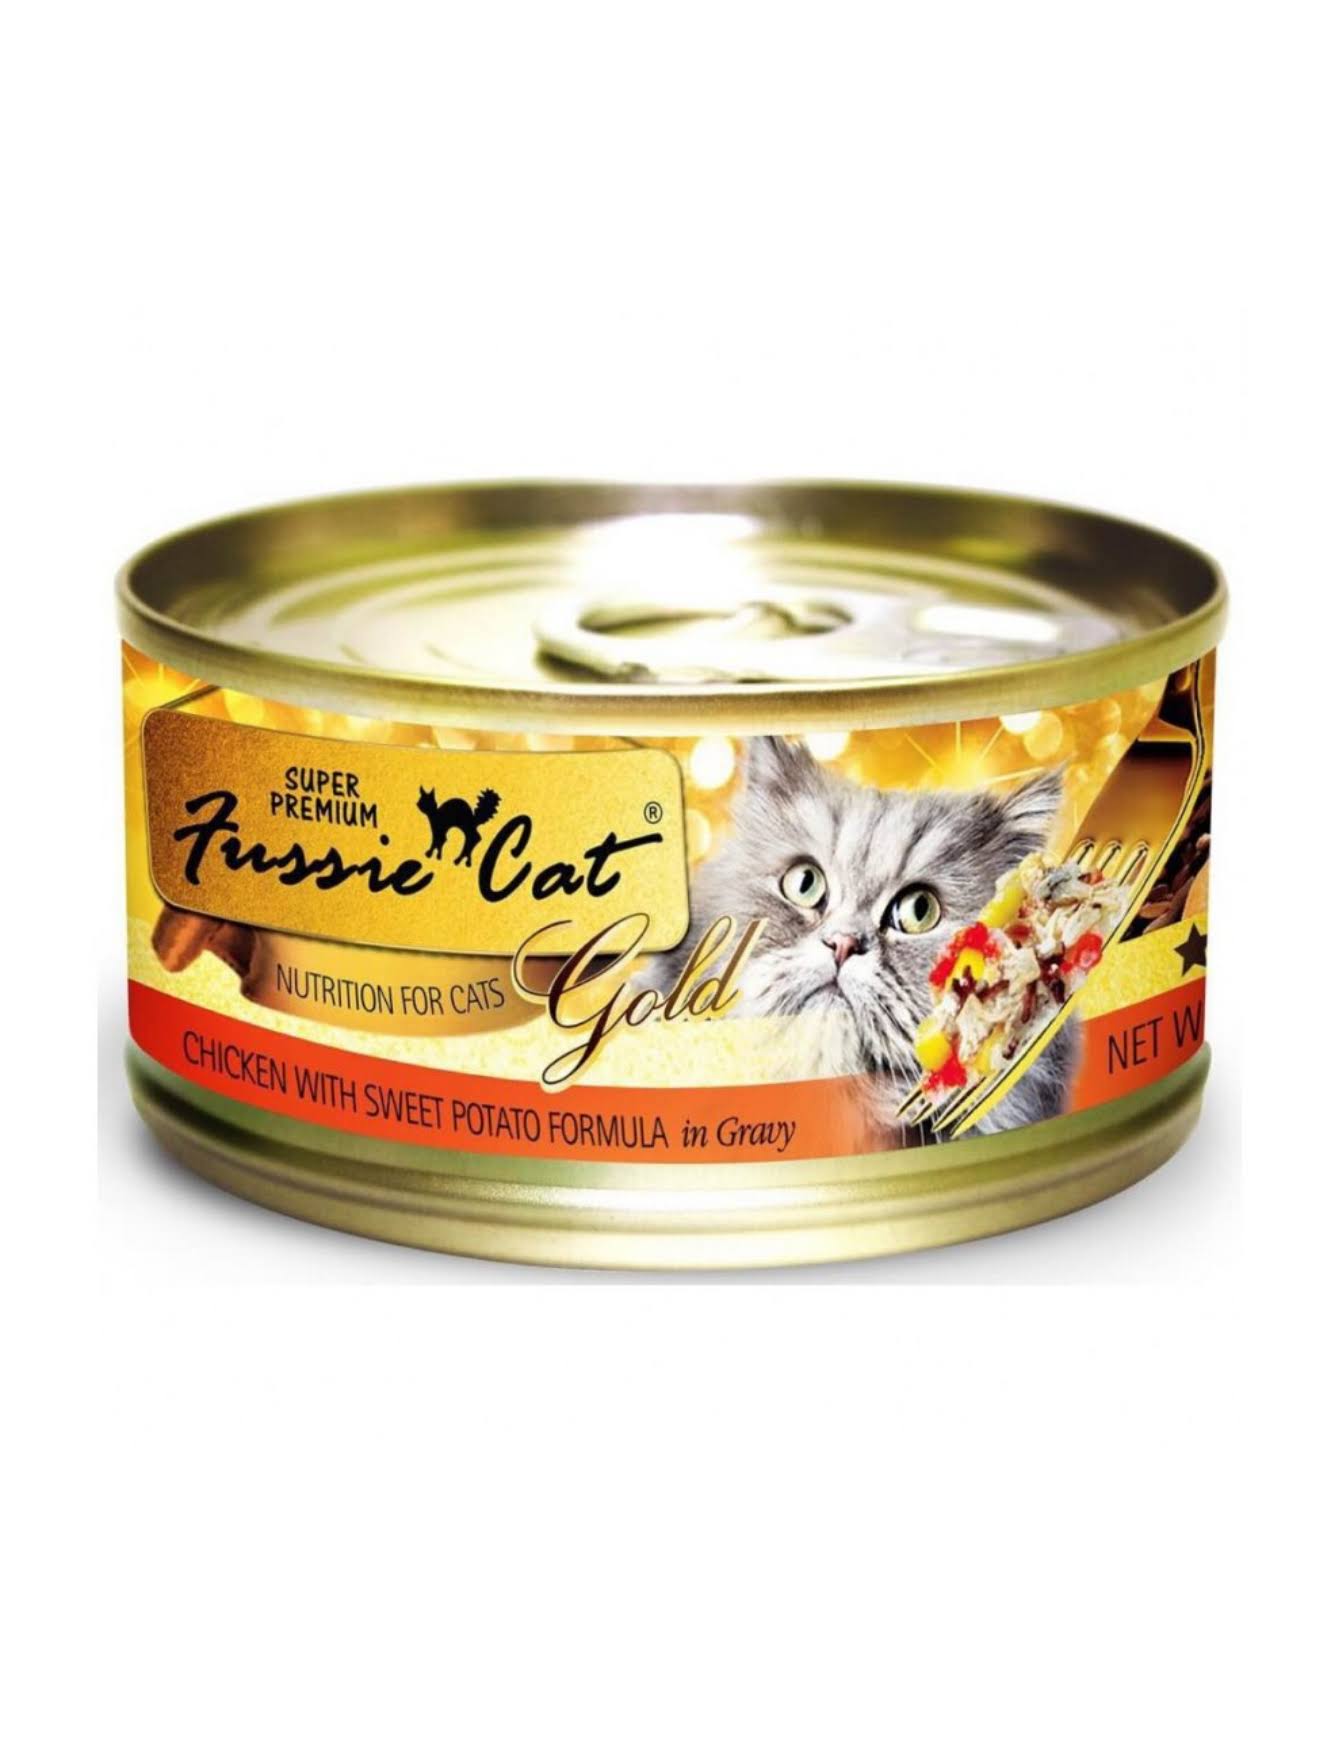 Fussie Cat Super Premium Chicken with Sweet Potato Formula in Gravy